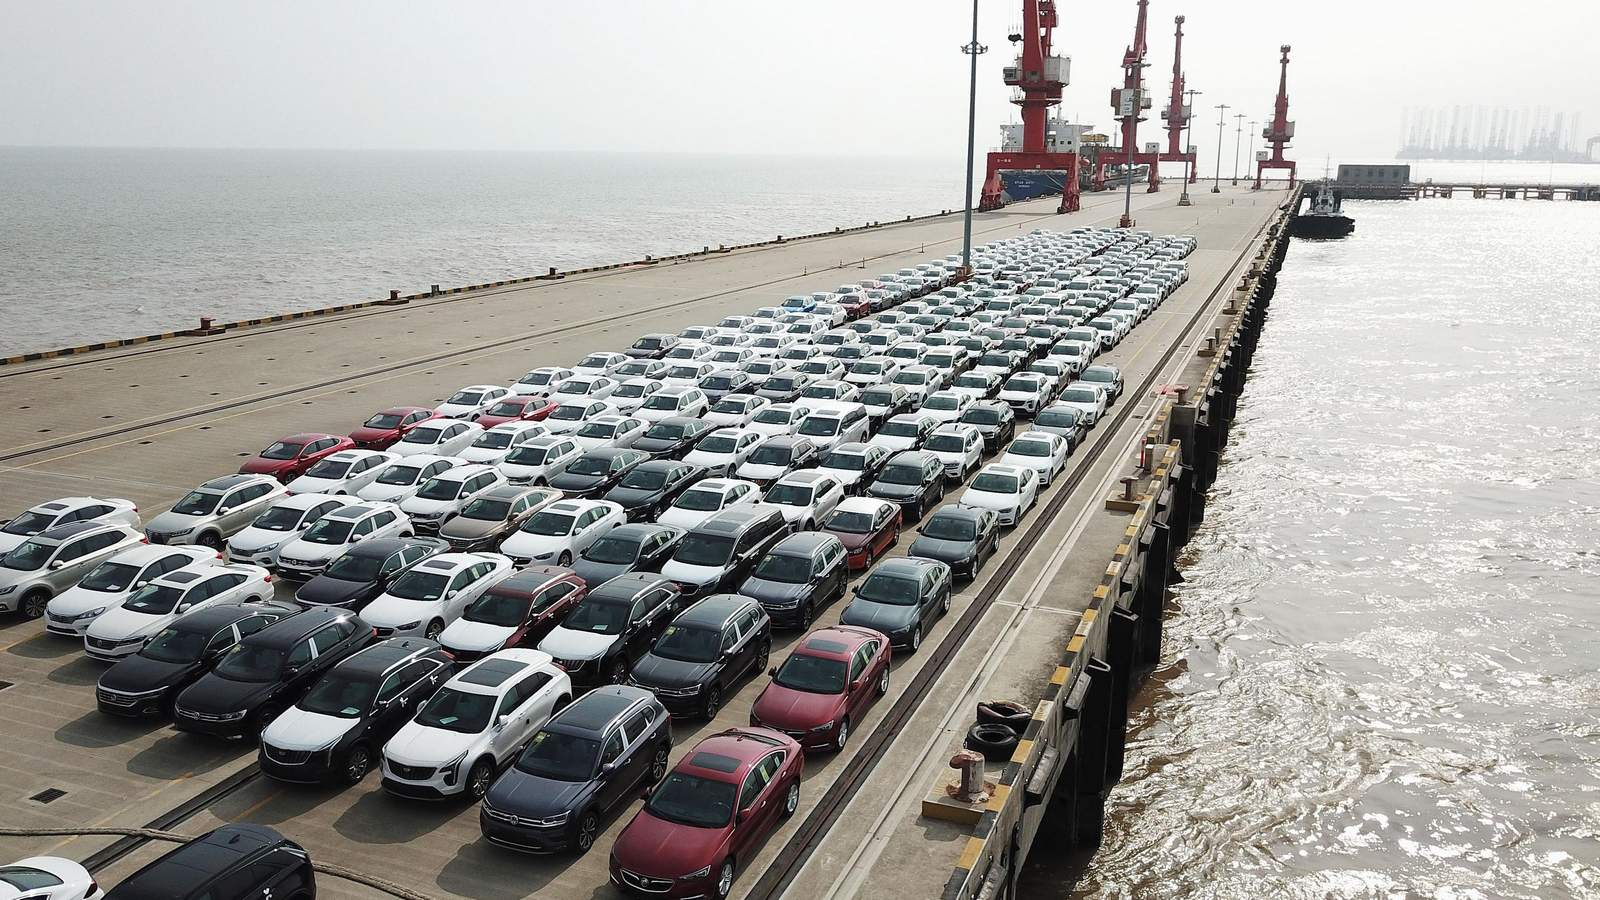 Khoảng 8.000 chiếc ô tô đang mắc kẹt tại cảng biển Zeebrugge của Bỉ khi đang trên đường xuất khẩu sang Nga / LUXURYLAUNCHES